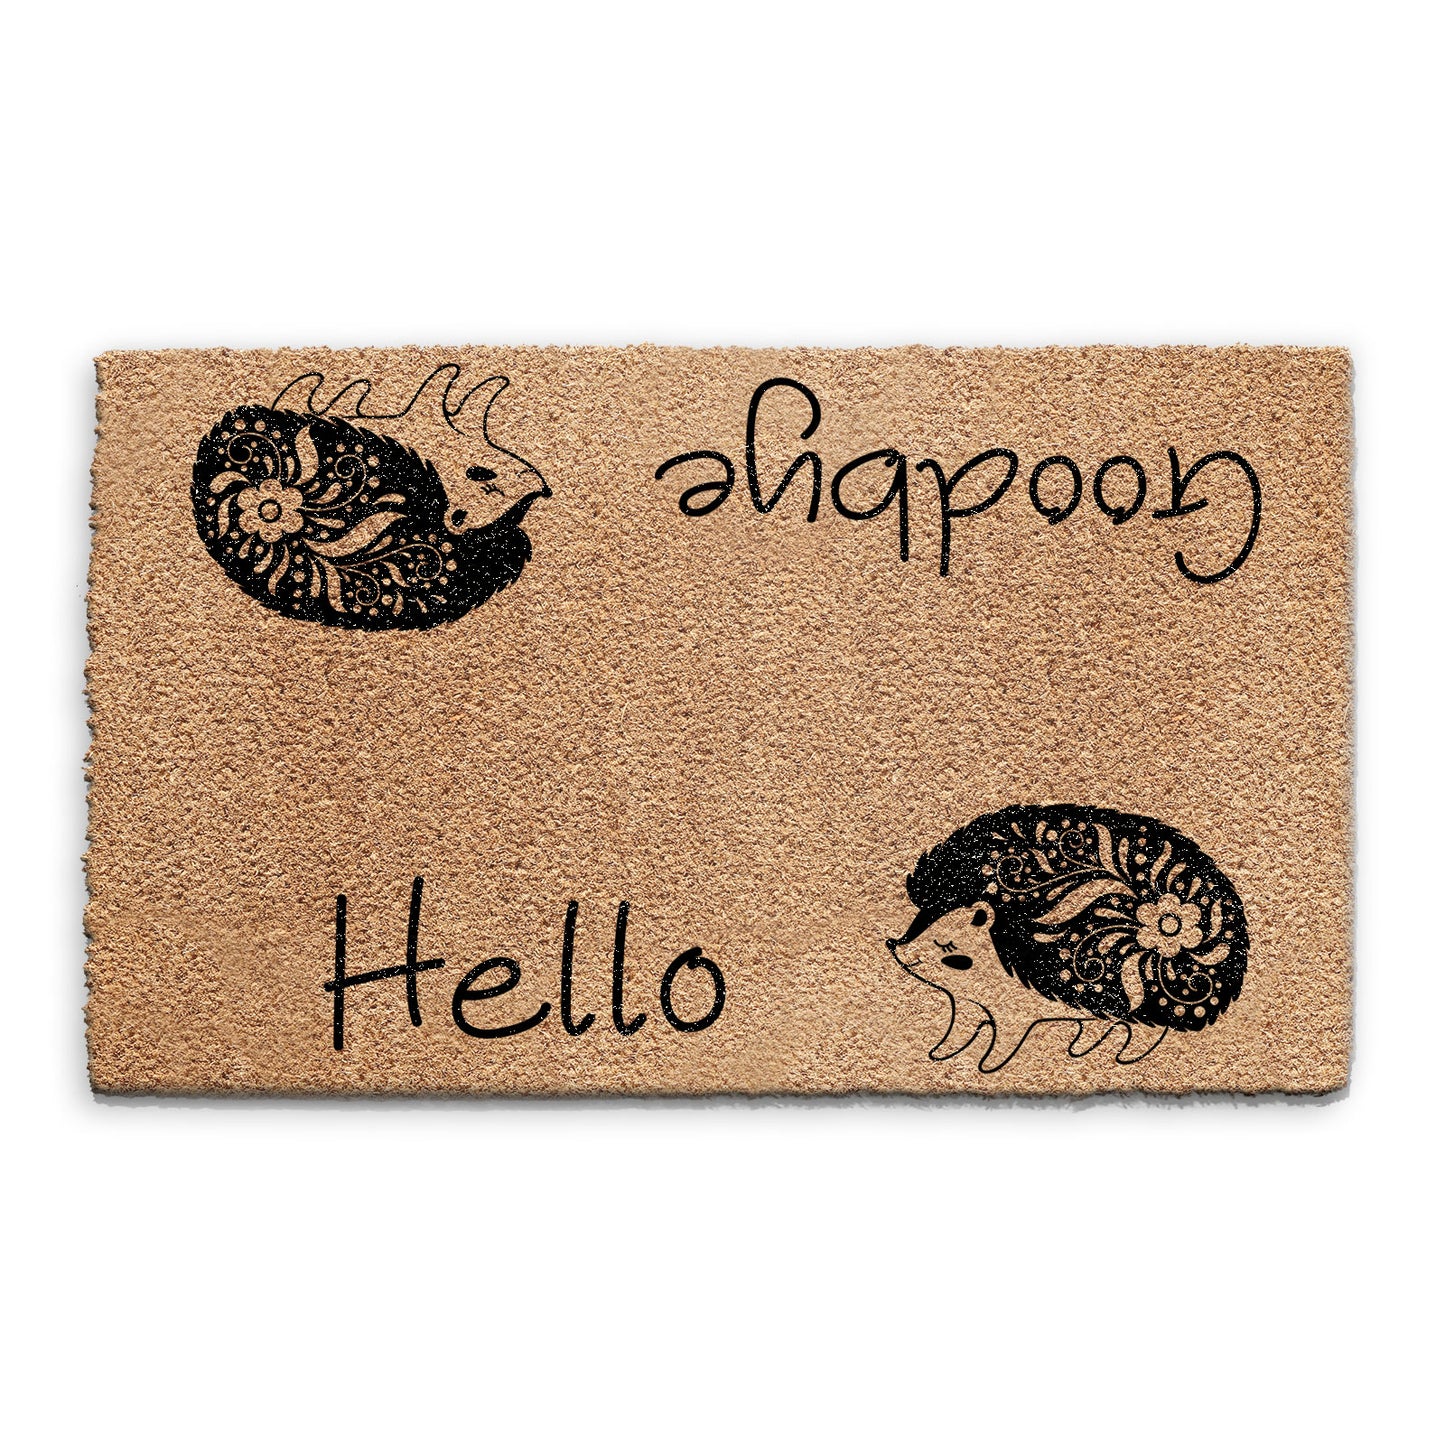 Coir Doormat - Hello Goodbye Hedgehog